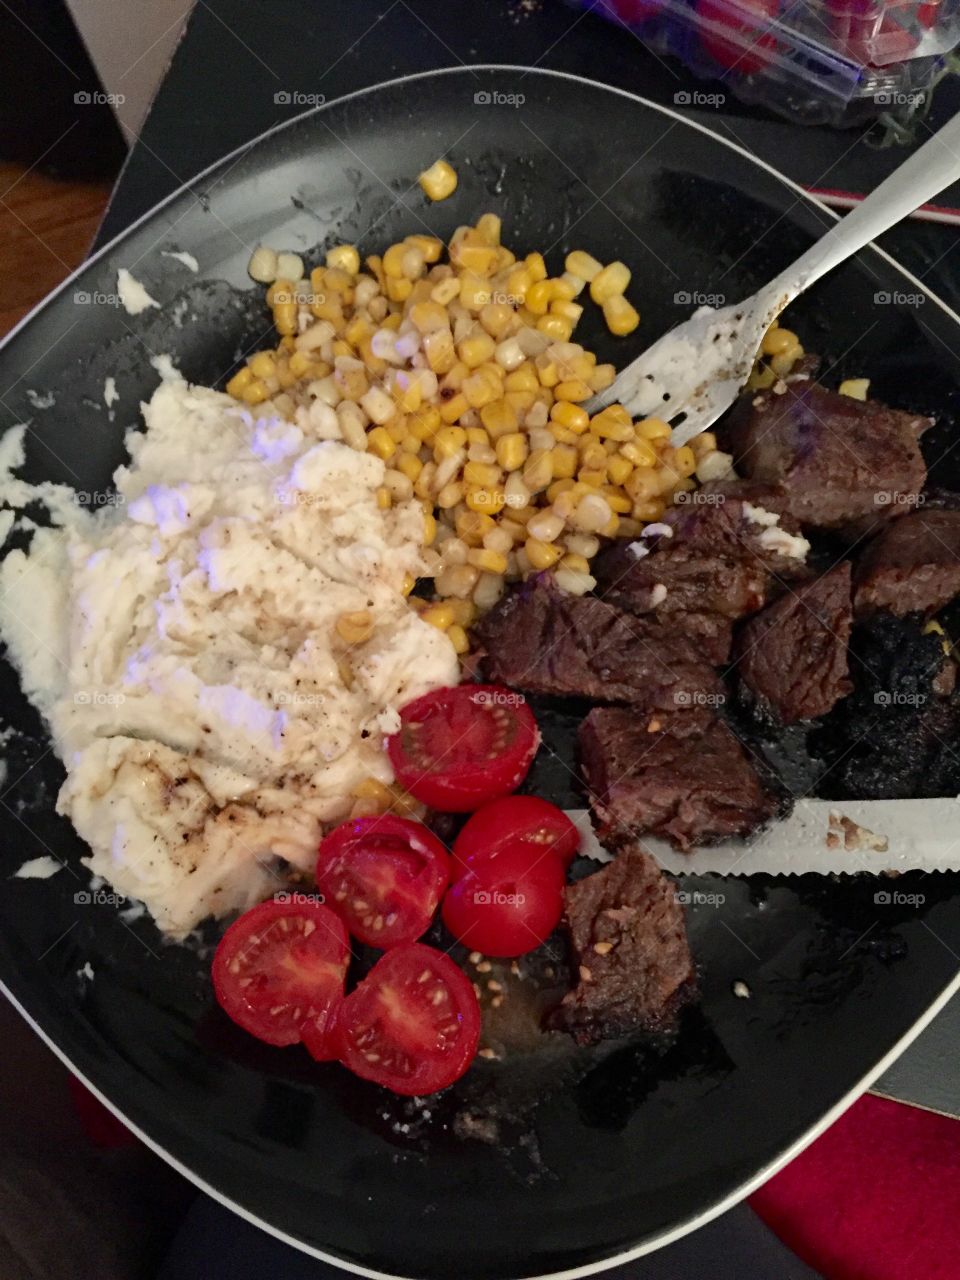 Steak, mashed potatoes, corn and tomatoes